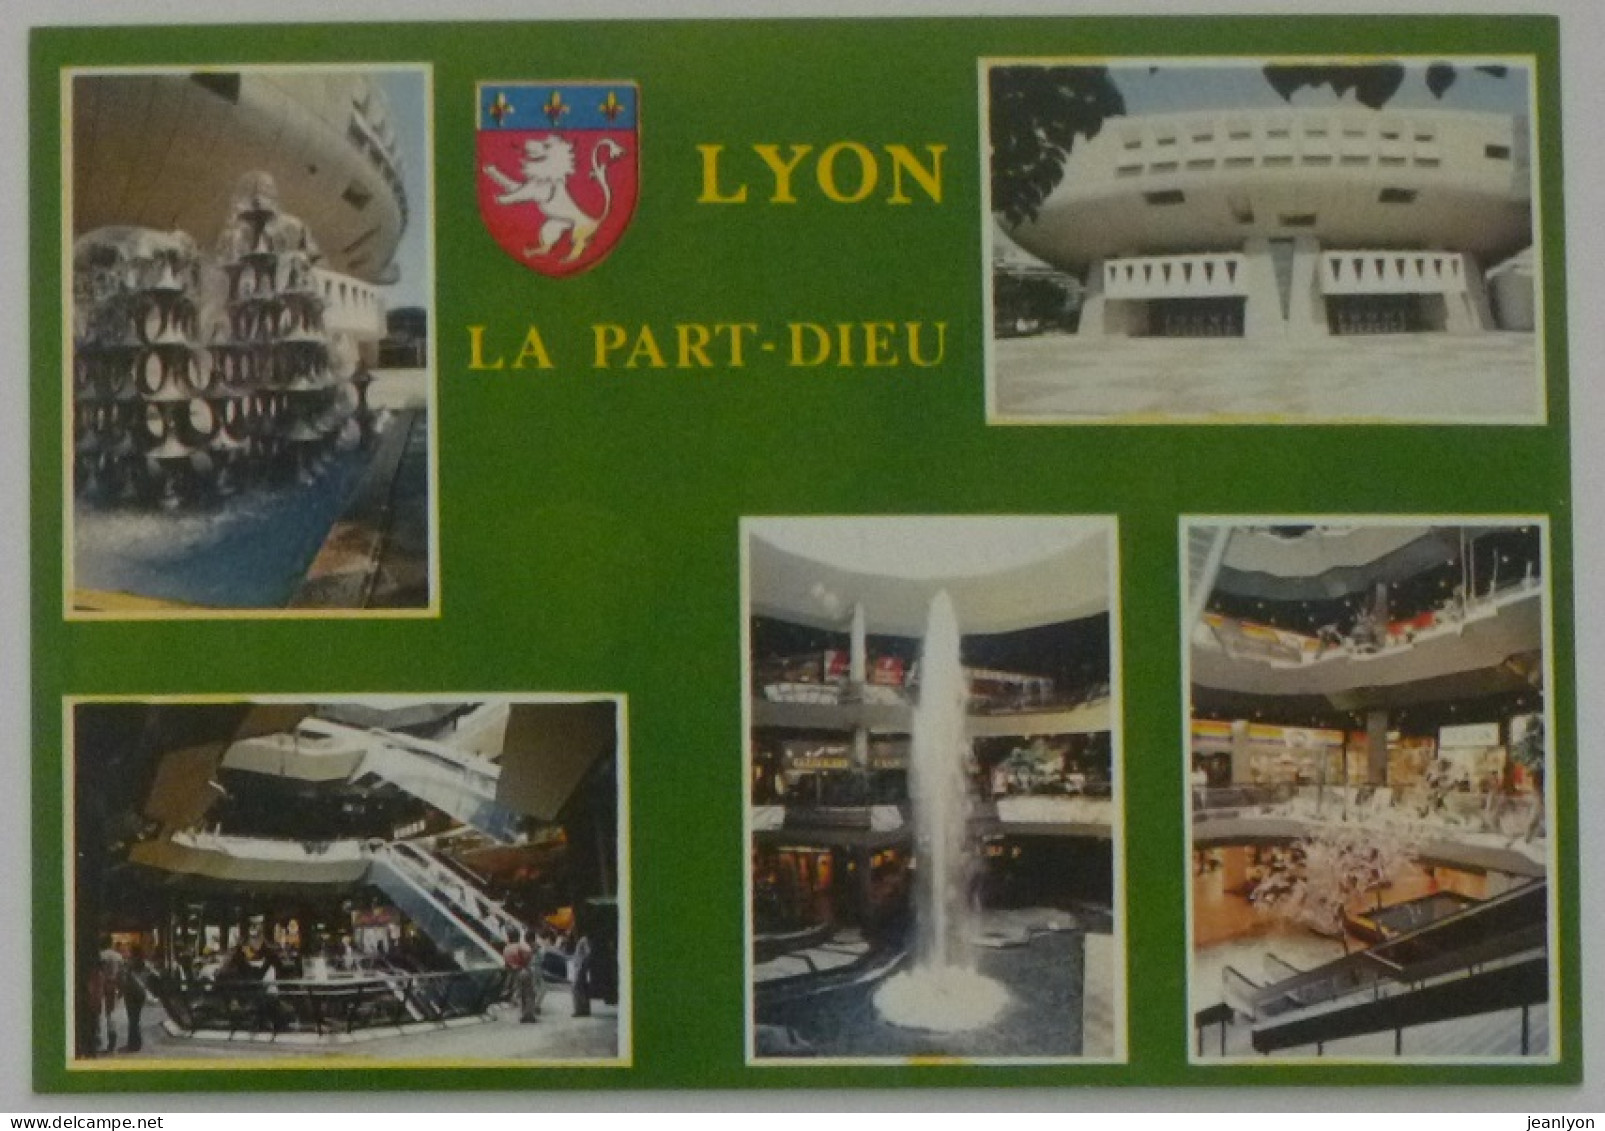 LYON (69/Rhône) - PART DIEU / Jet Eau Centre Commercial - Auditorium / Blason Ville - Lyon 3